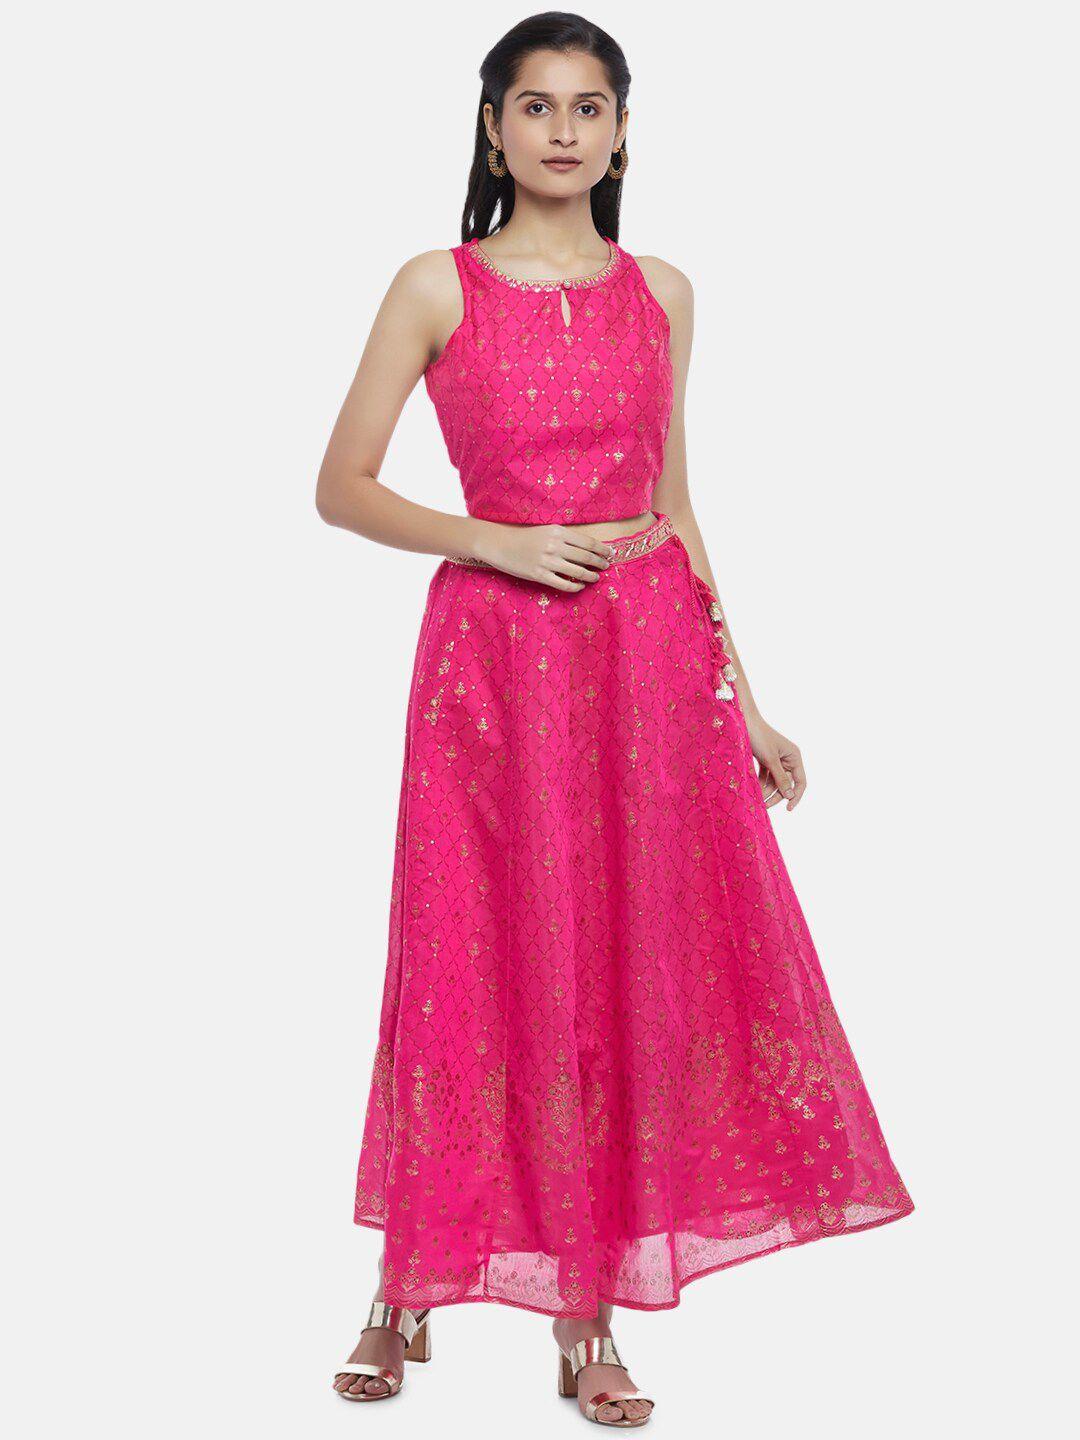 akkriti by pantaloons pink & gold-toned printed ready to wear lehenga & choli